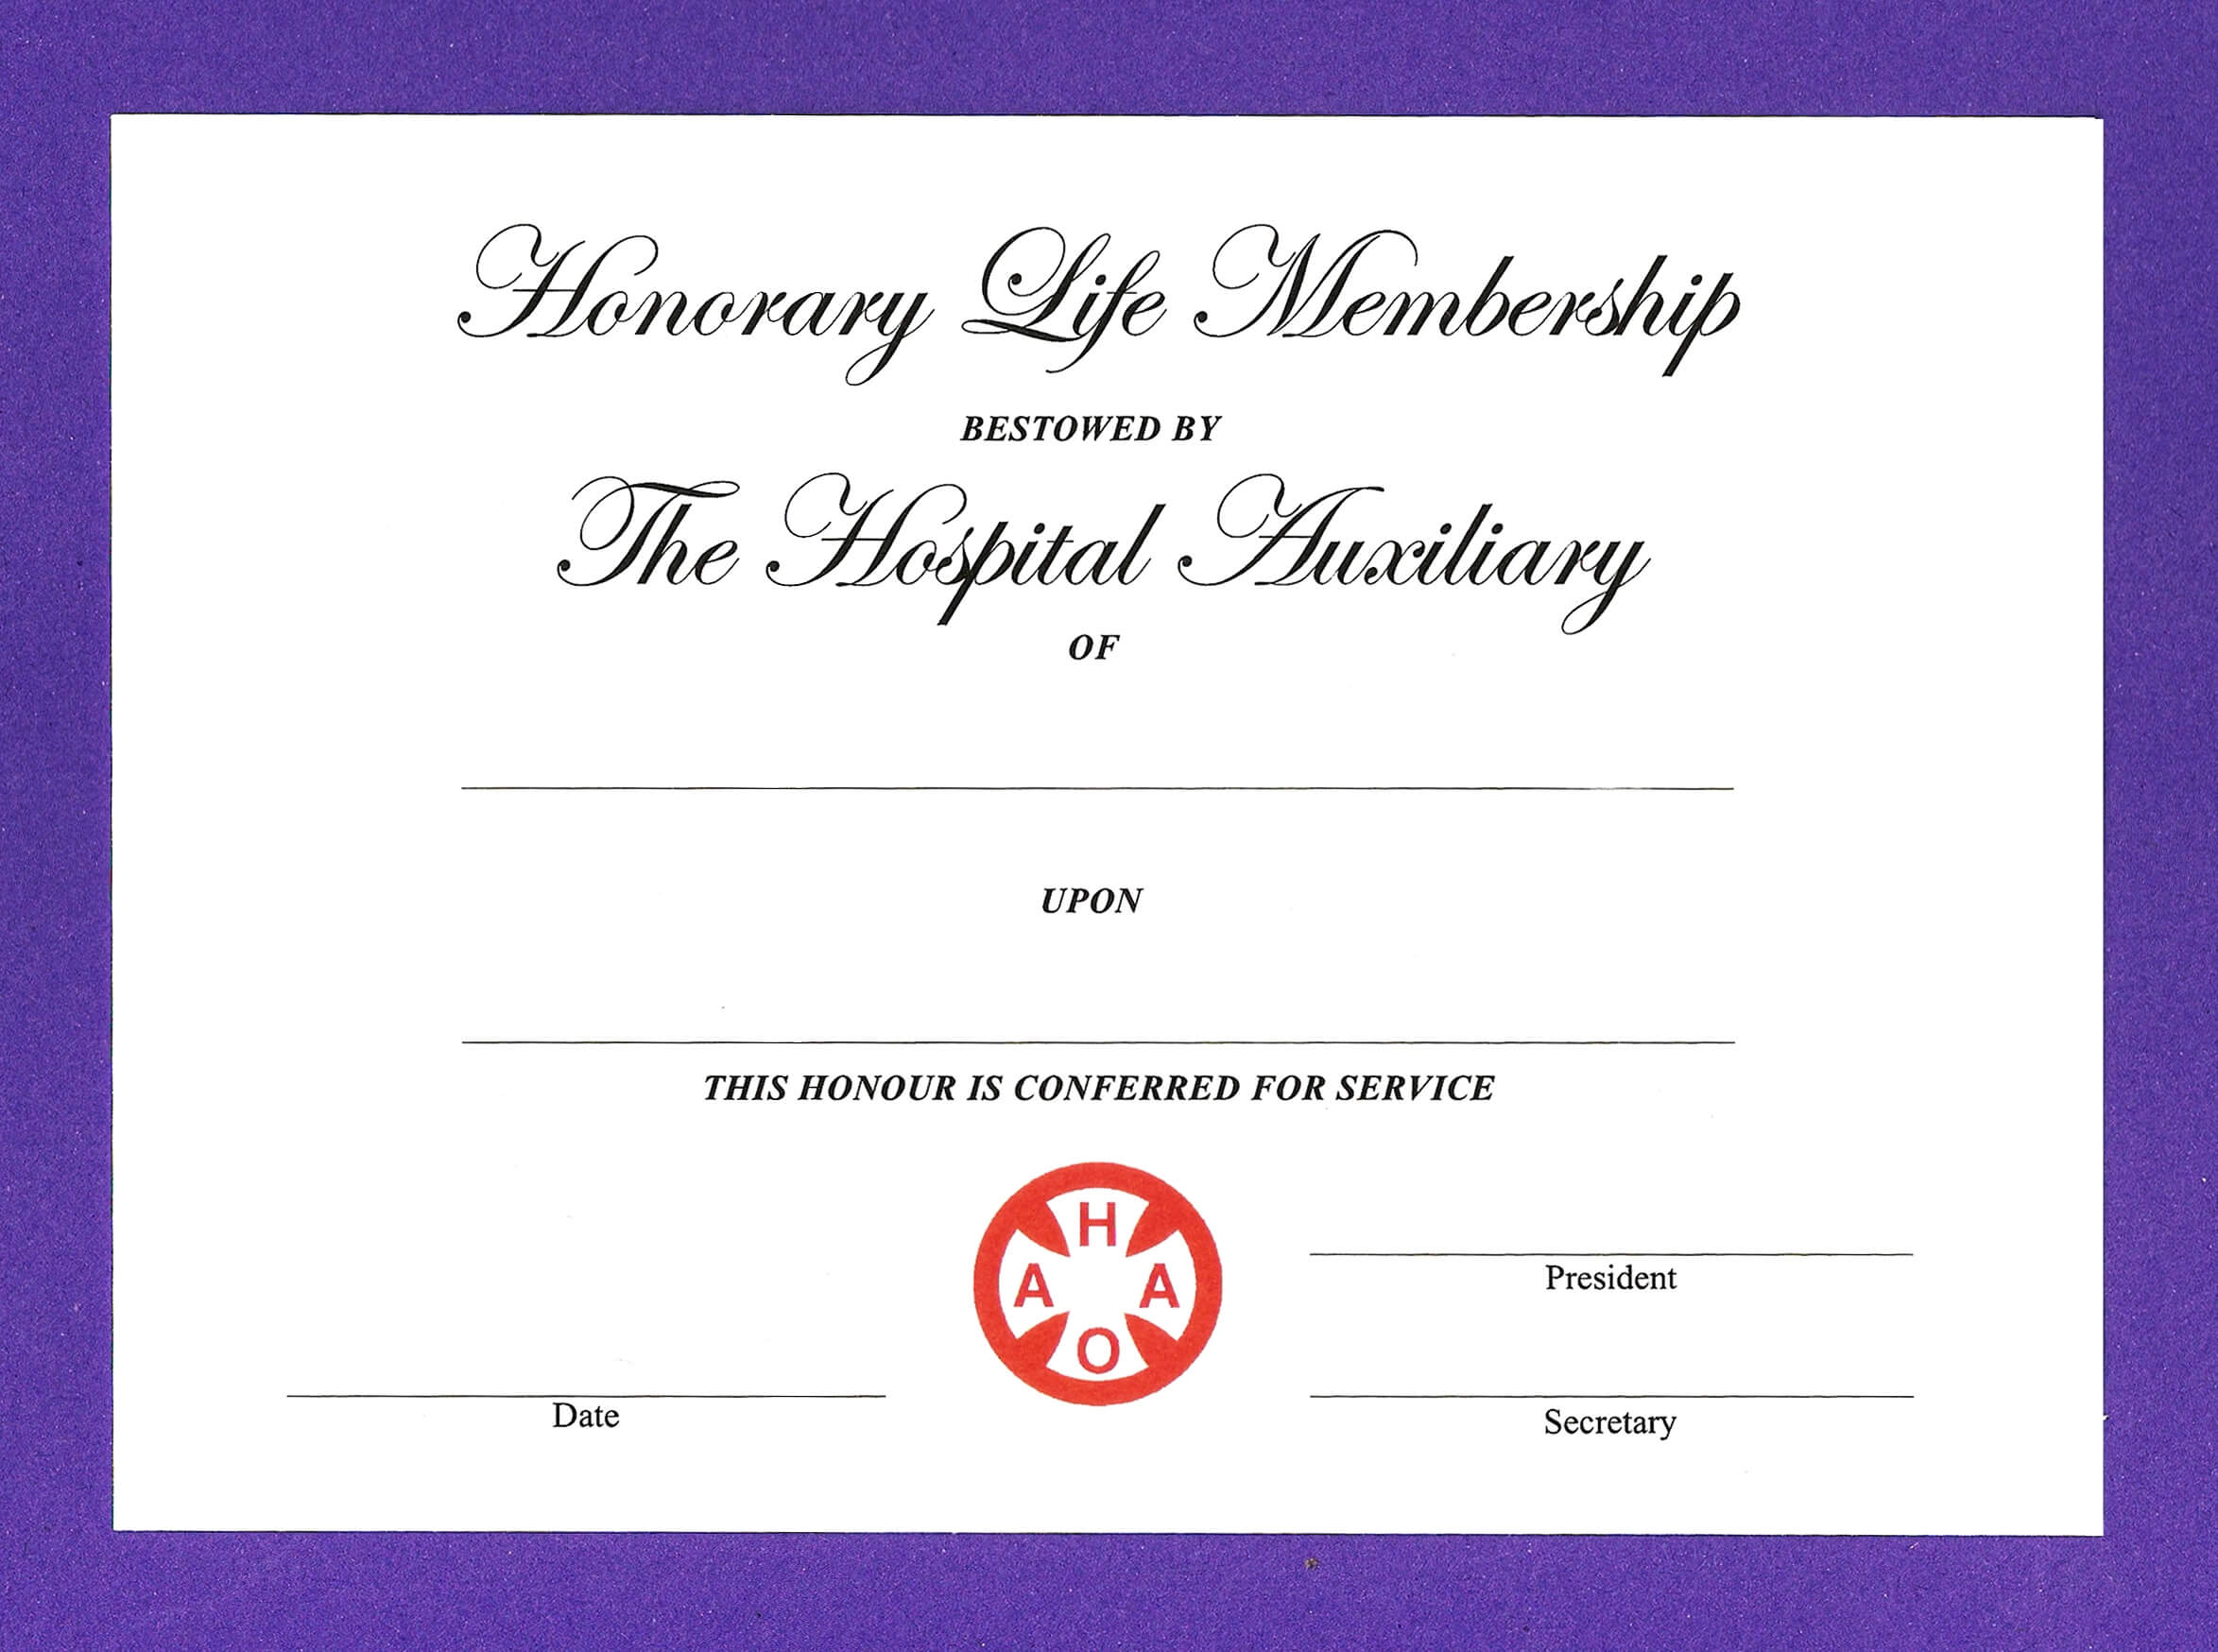 Honorary Membership Certificate Template - Dalep.midnightpig.co With Life Membership Certificate Templates